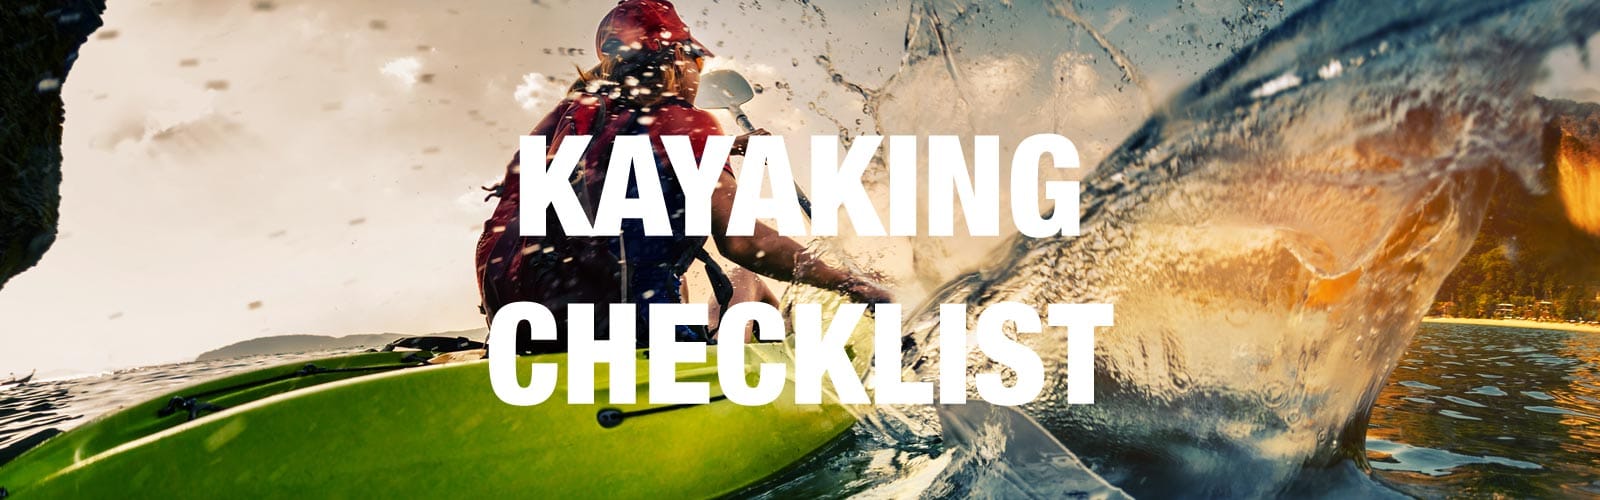 Kayaking Checklist